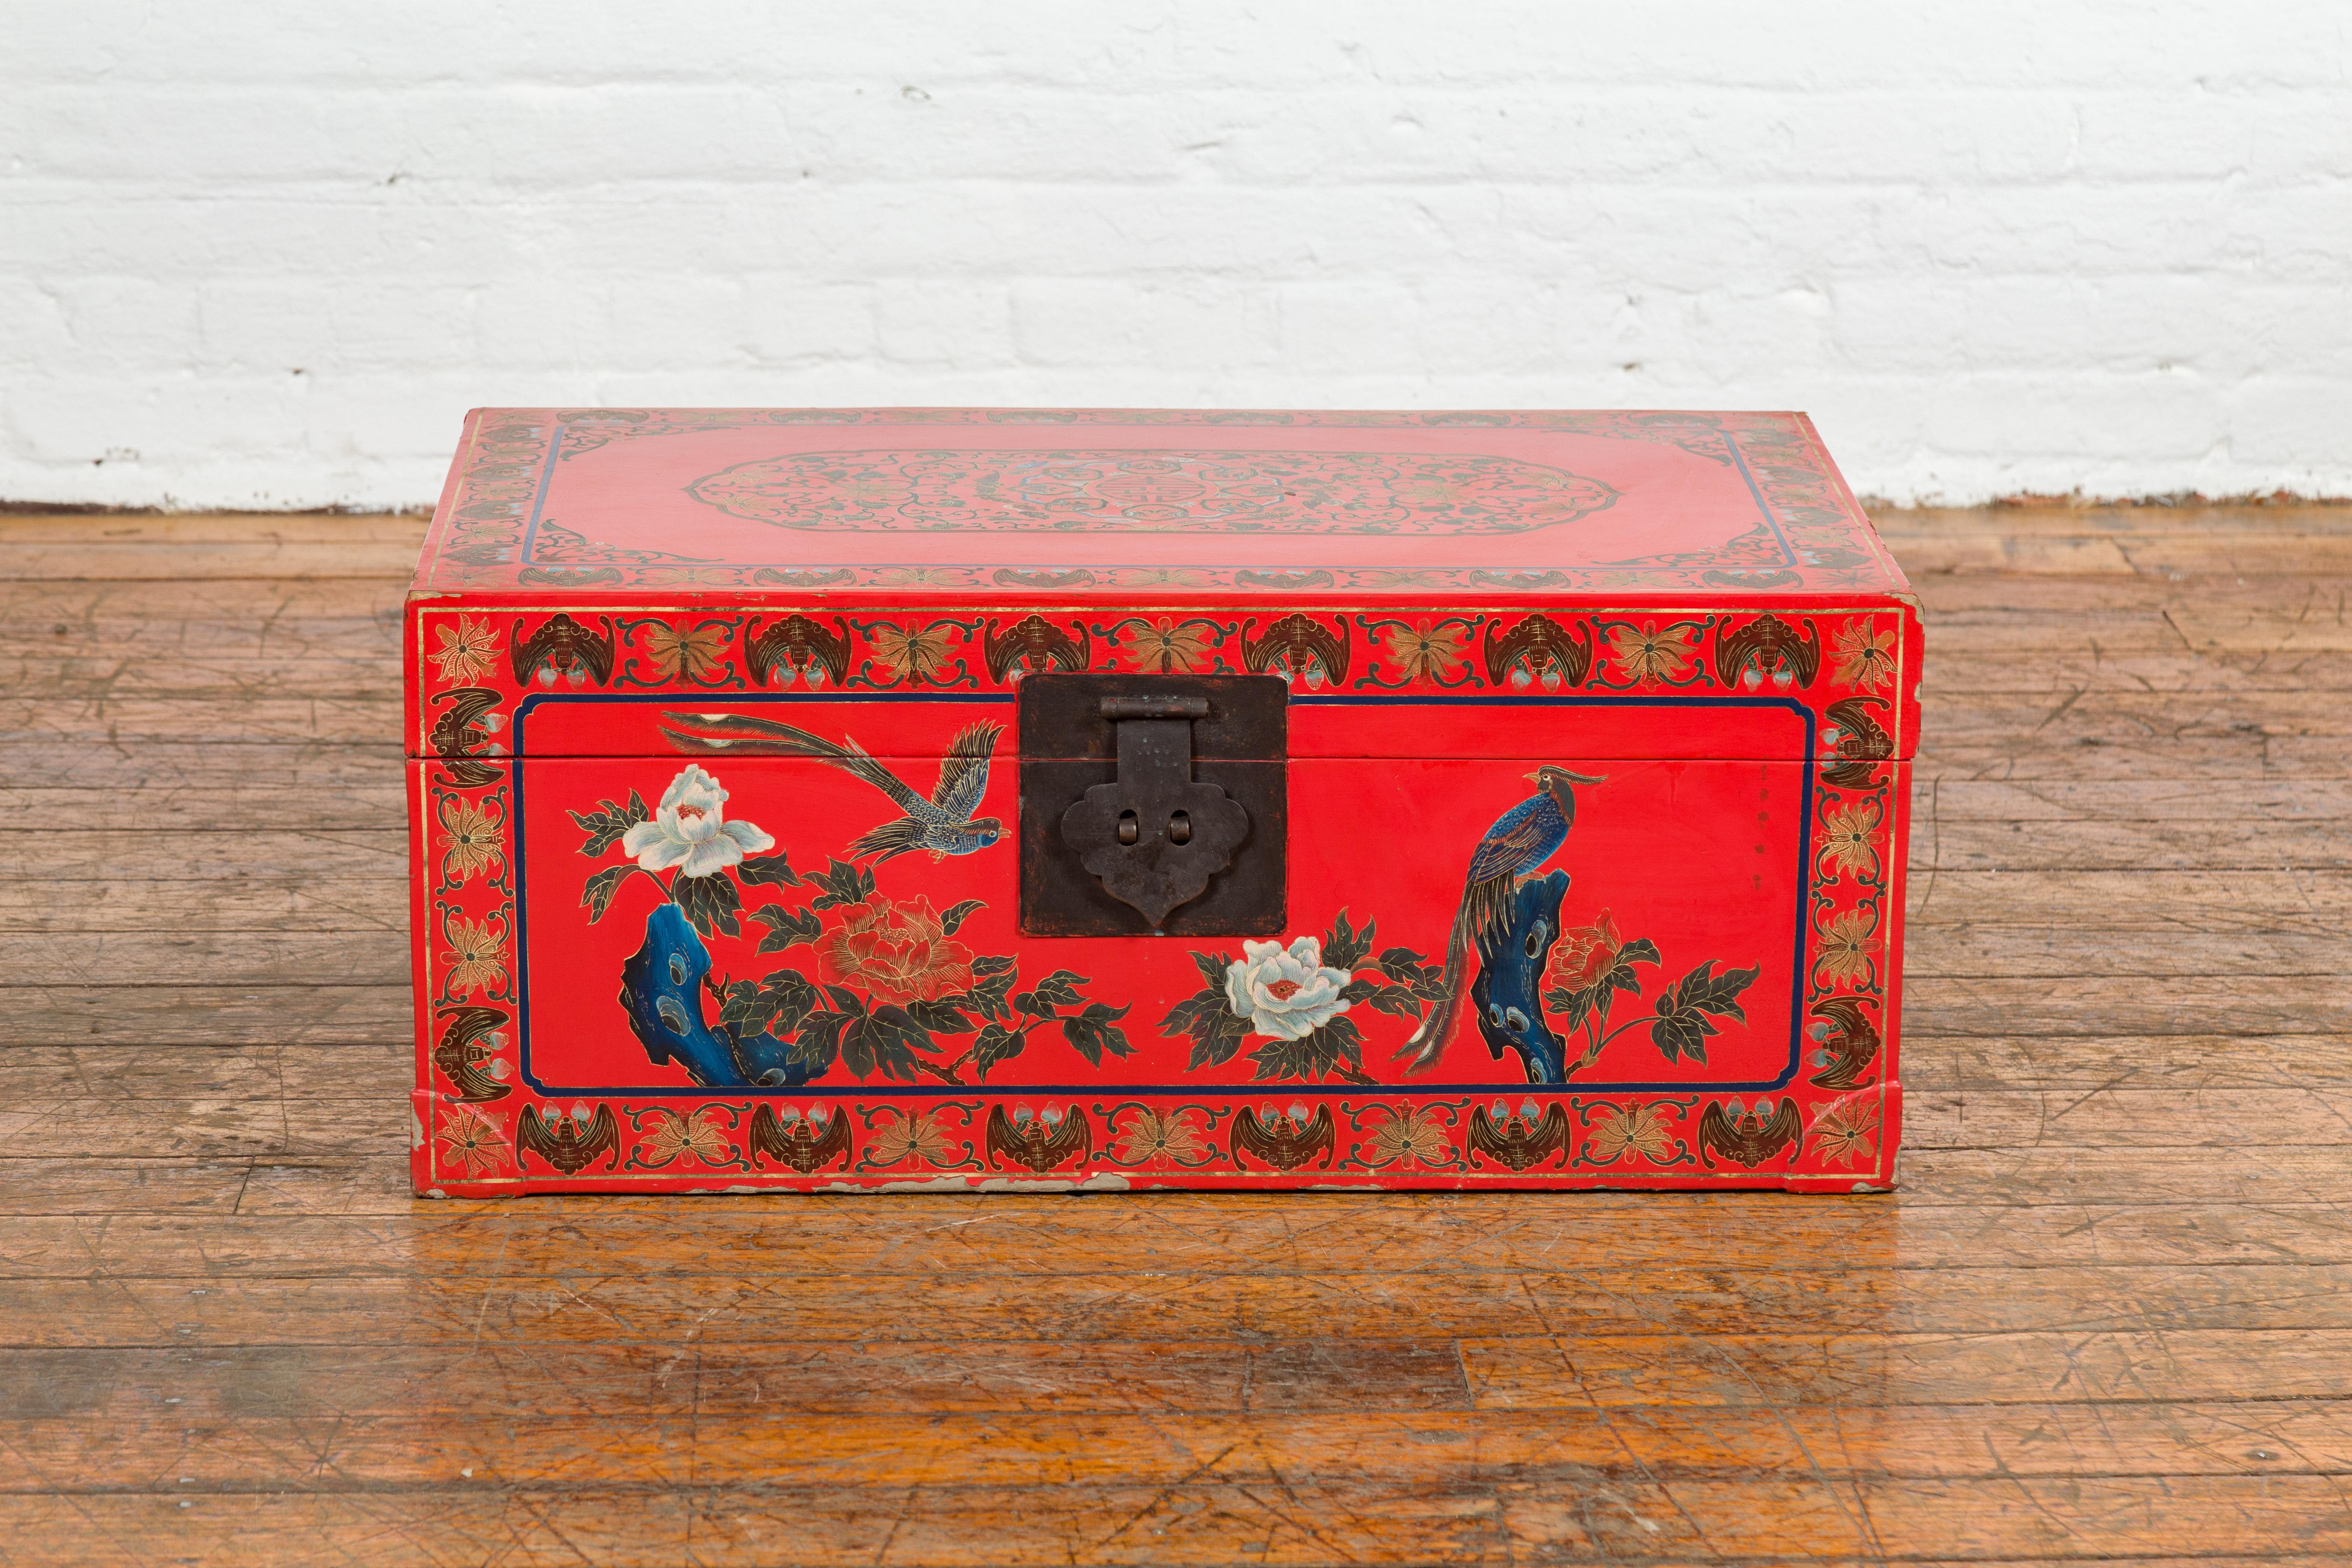 Eine alte chinesische Rotlacktruhe aus der Mitte des 20. Jahrhunderts mit Reiher-Vogel-Motiven und Fledermaus- und Blumenfriesen an allen Rändern. Tauchen Sie ein in die kunstvolle Anziehungskraft dieser chinesischen Rotlacktruhe aus der Mitte des